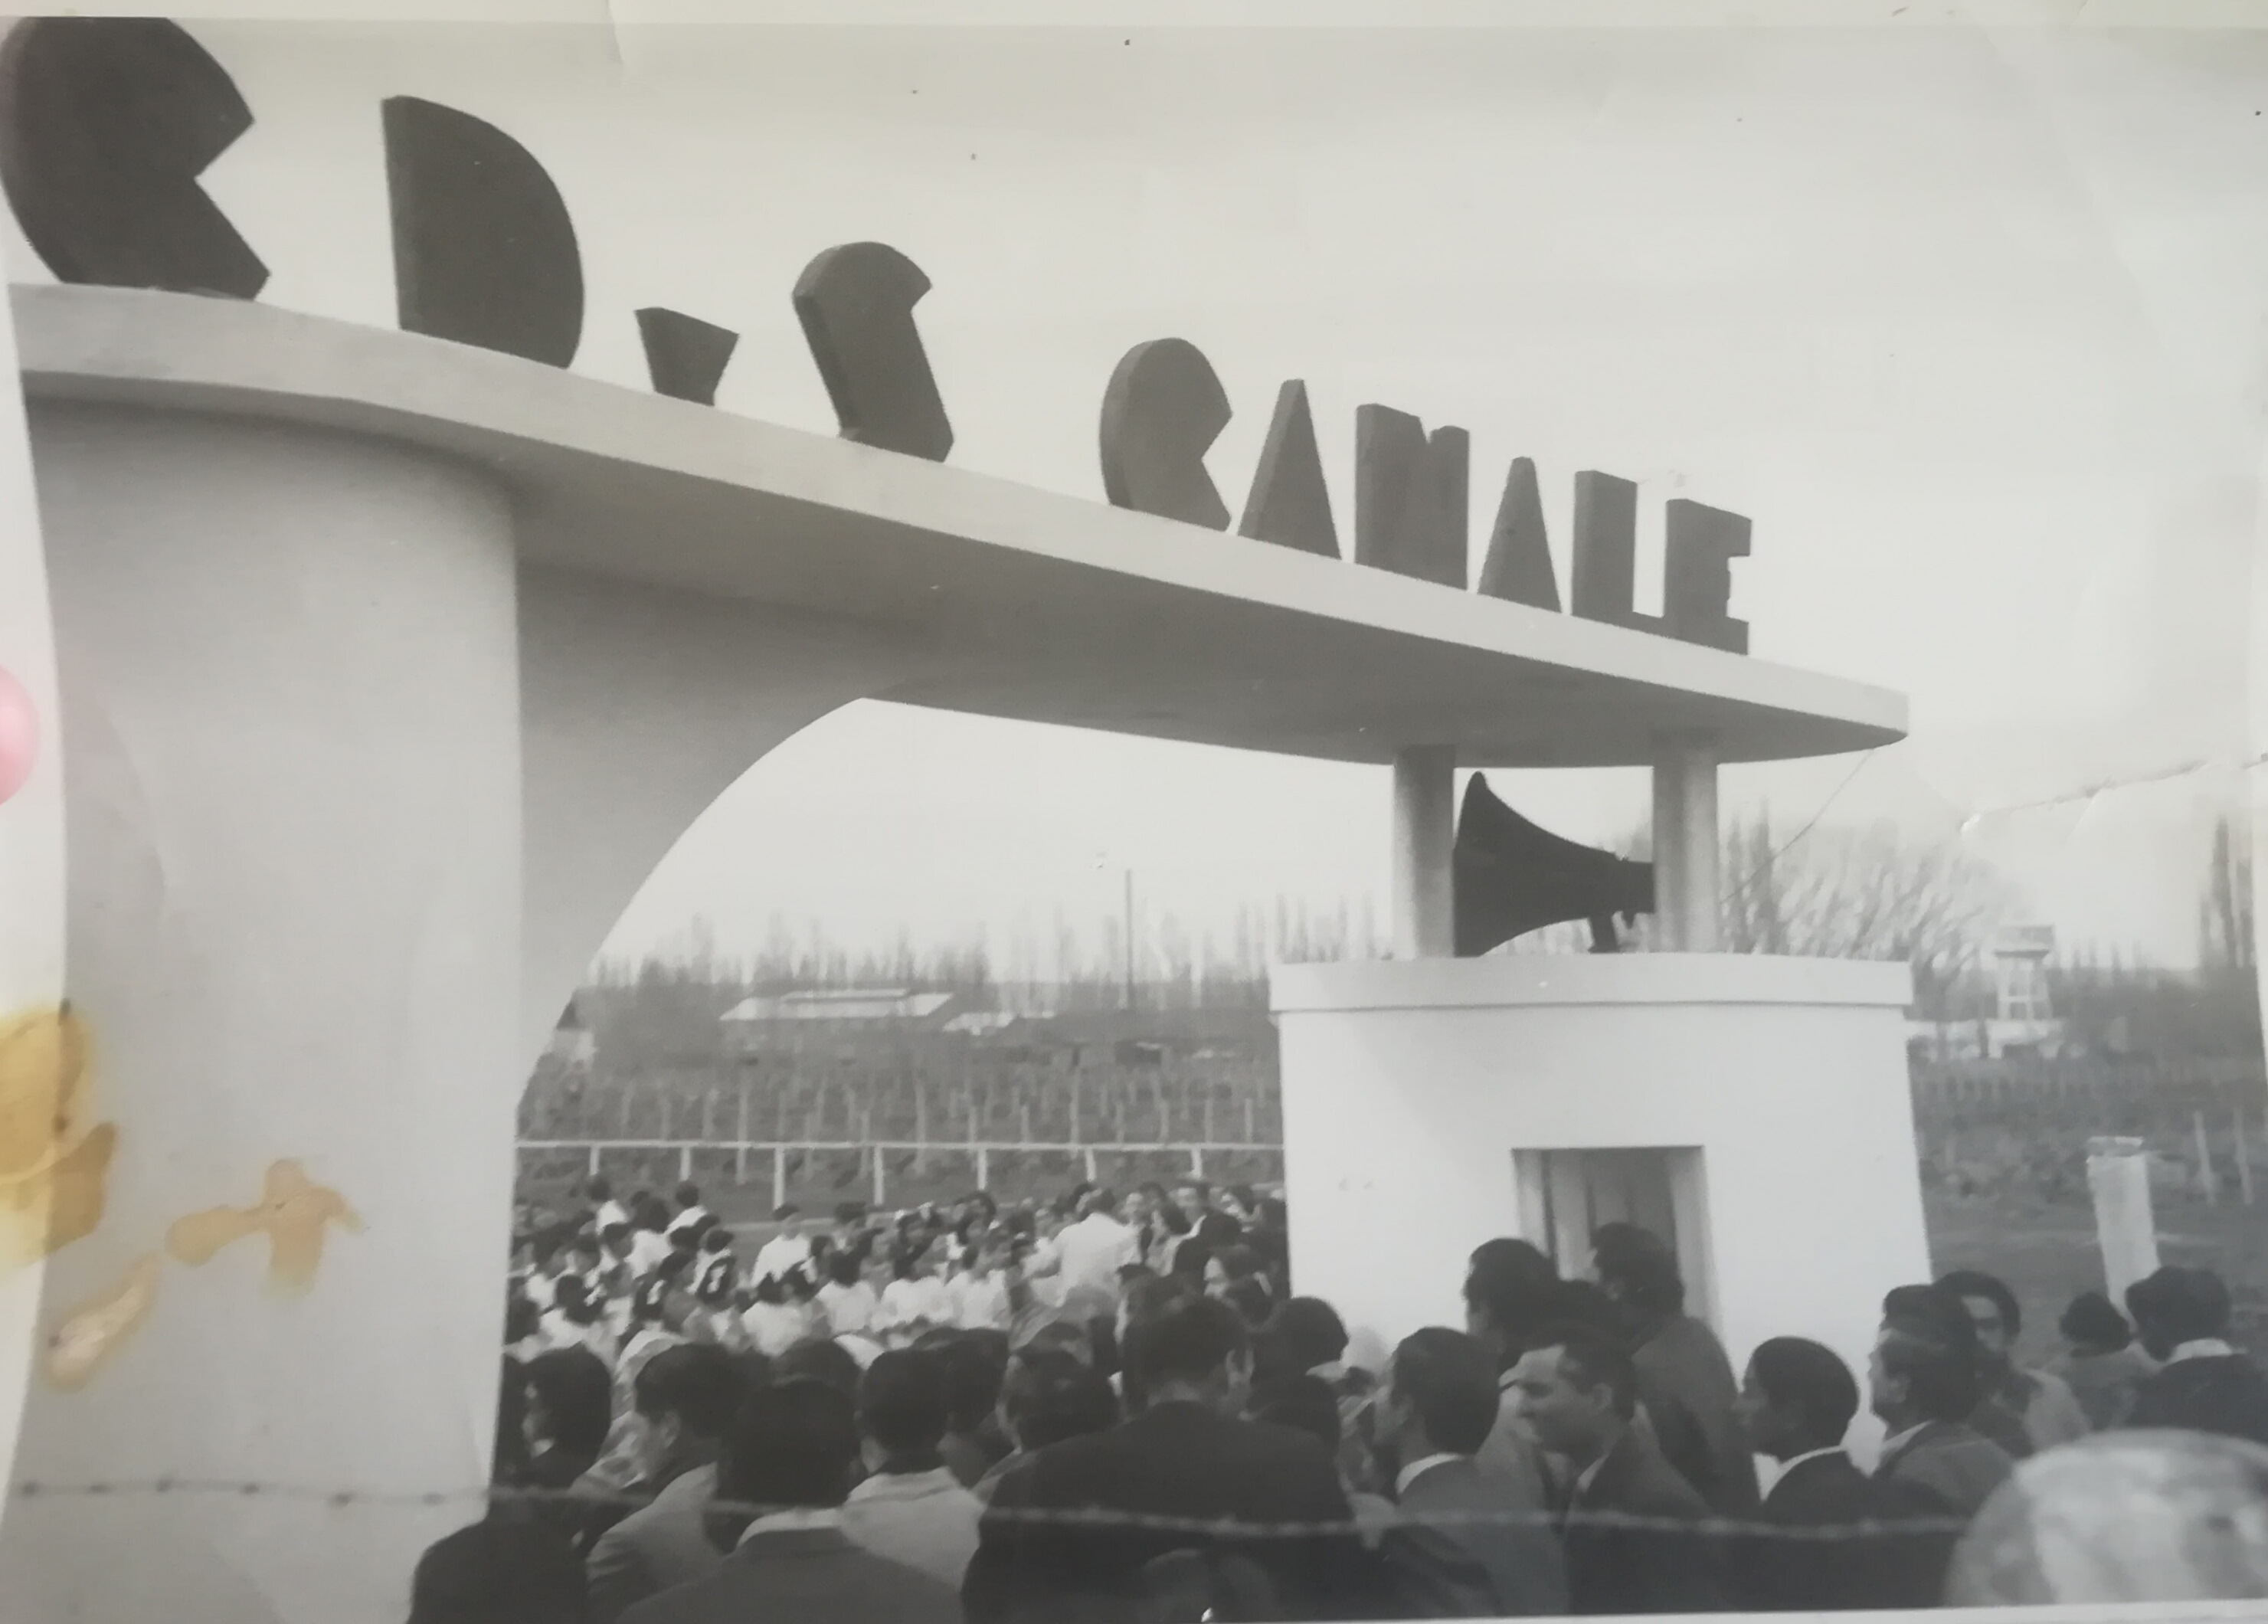 El Deportivo Canale empezó a ser club a mediados del '40, y supo contar con su propio campo de juego adentro del establecimiento. Gentileza